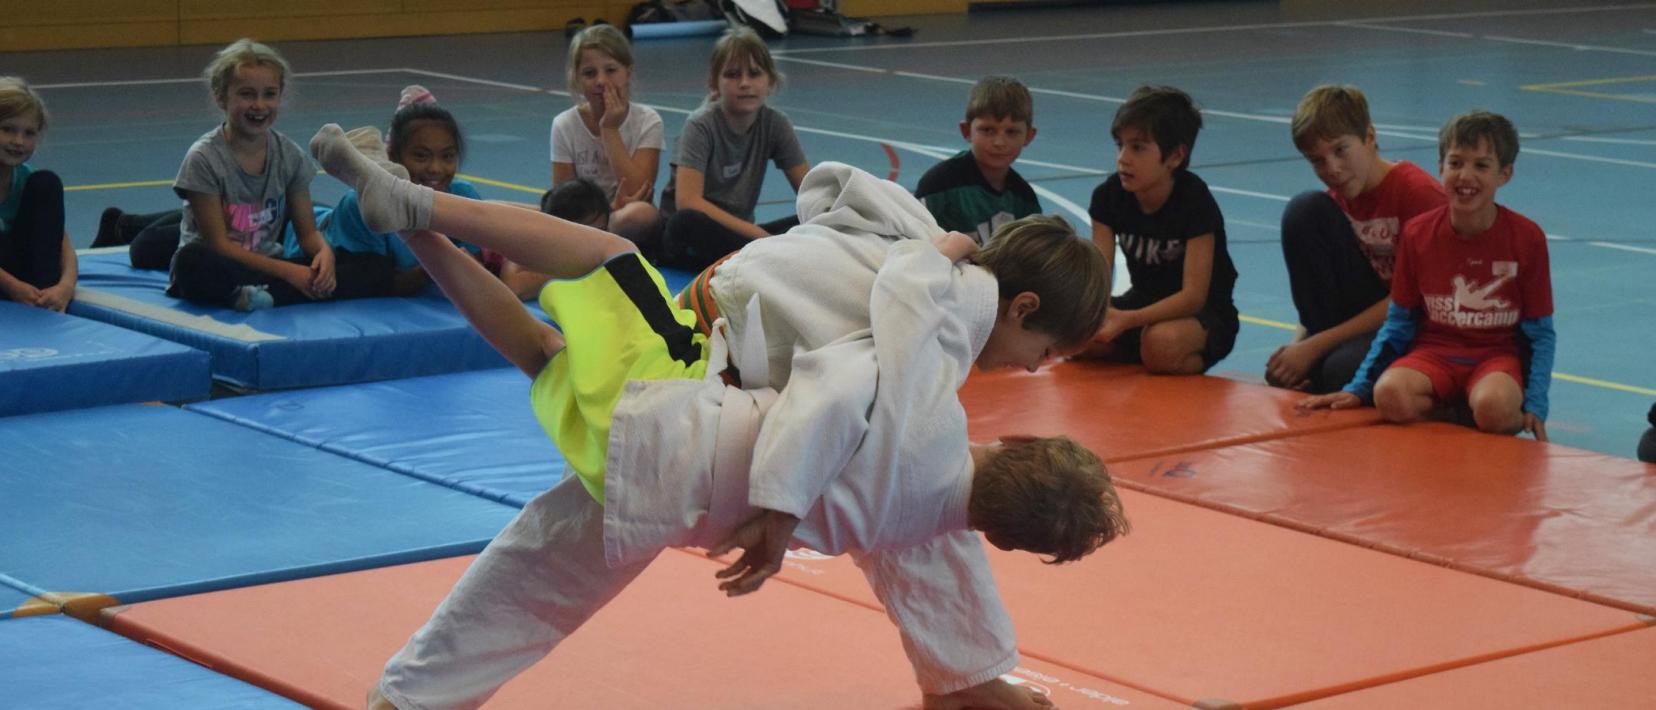 zwei Knaben machen auf Matten in einer Turnhalle Judo, weitere Kinder schauen begeistert zu